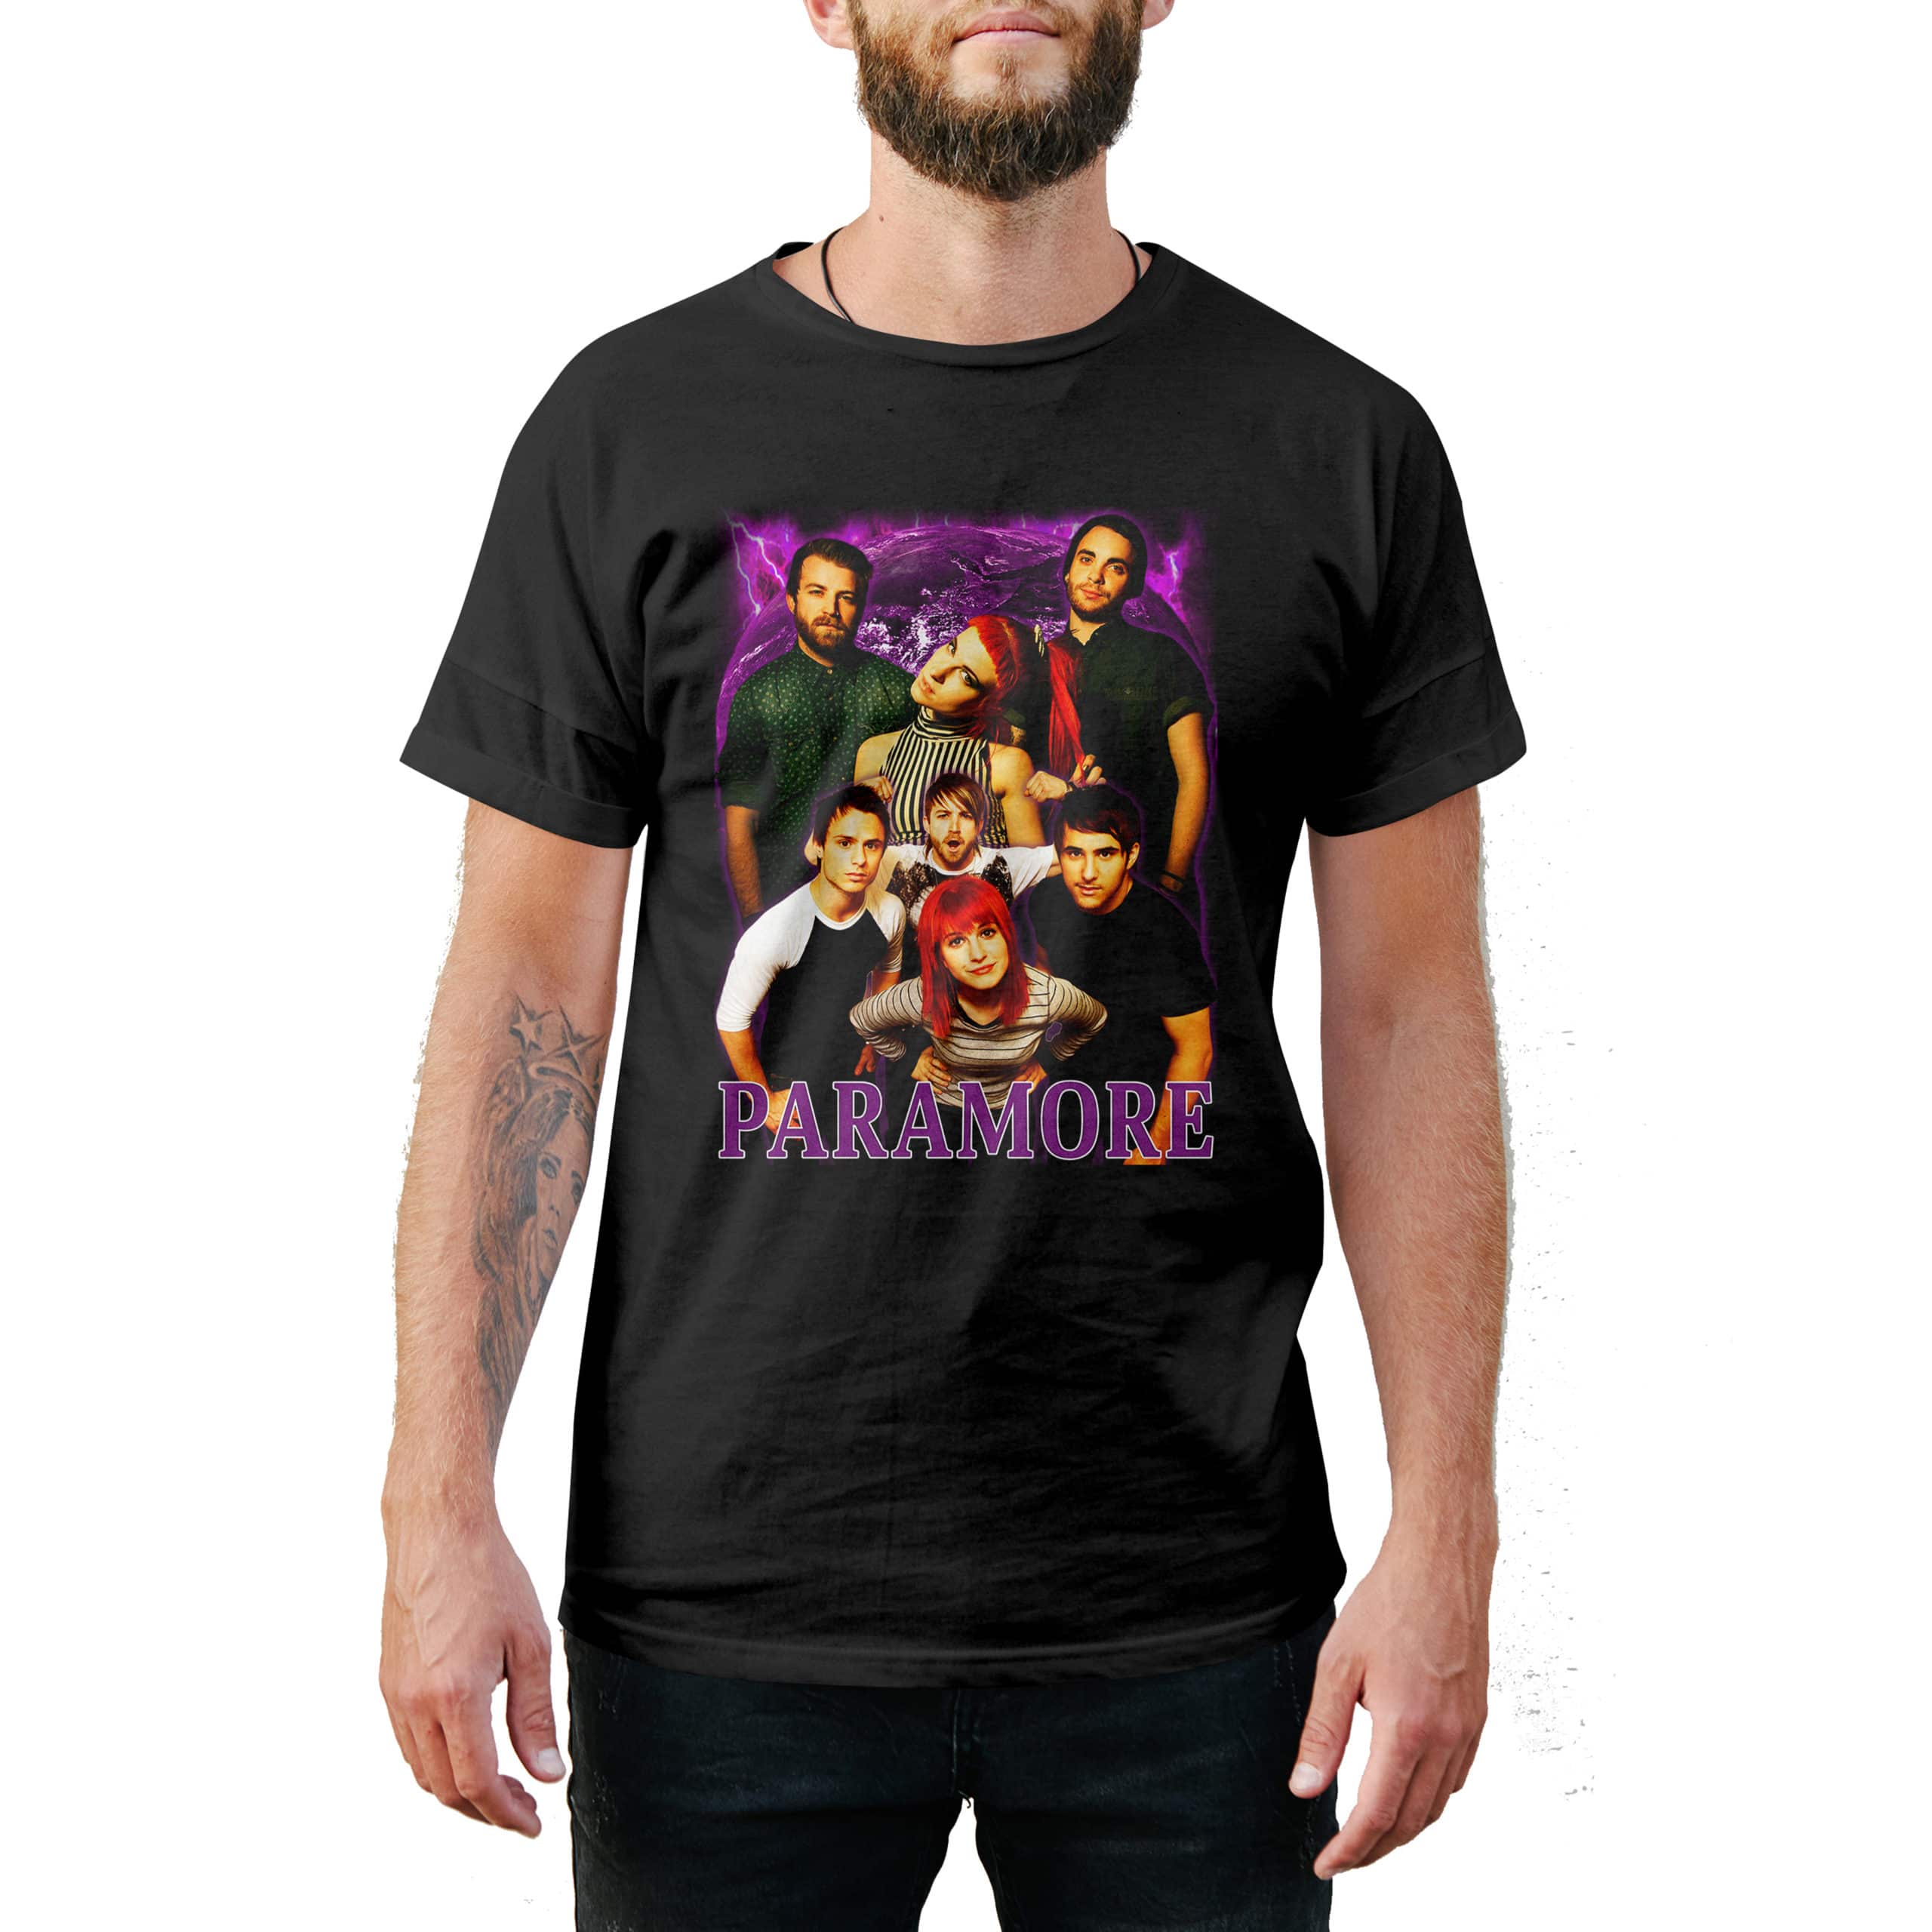 Paramore shirt 